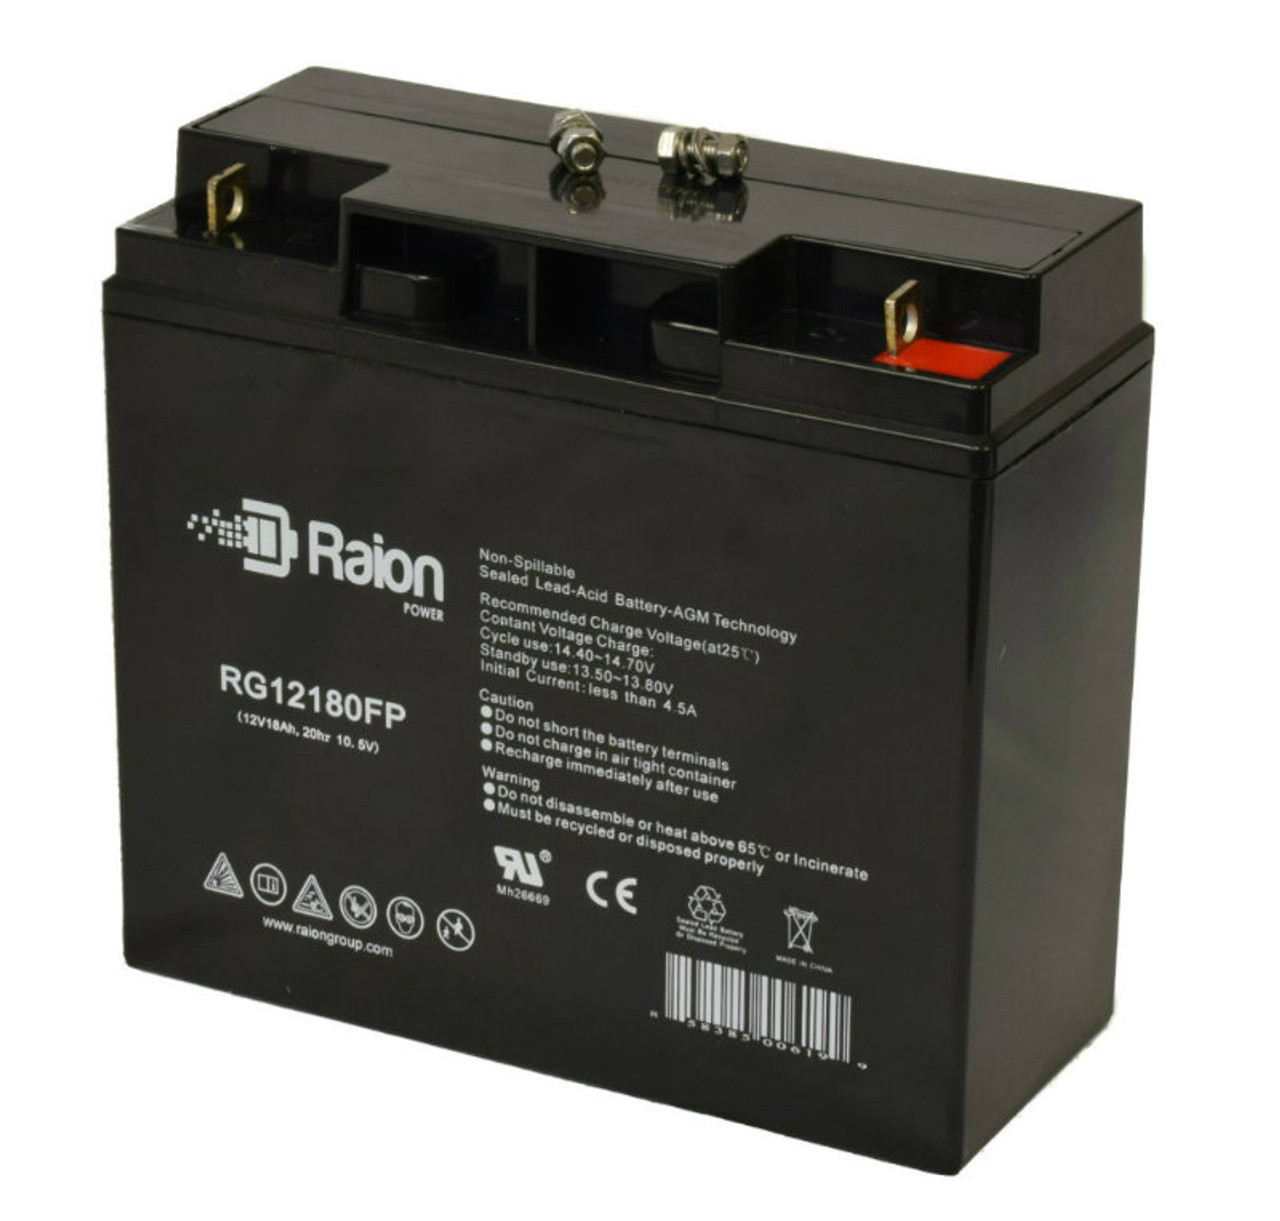 Raion Power RG12180FP 12V 18Ah Lead Acid Battery for Motor Trend 11-414 Jumpstarter / Compressor